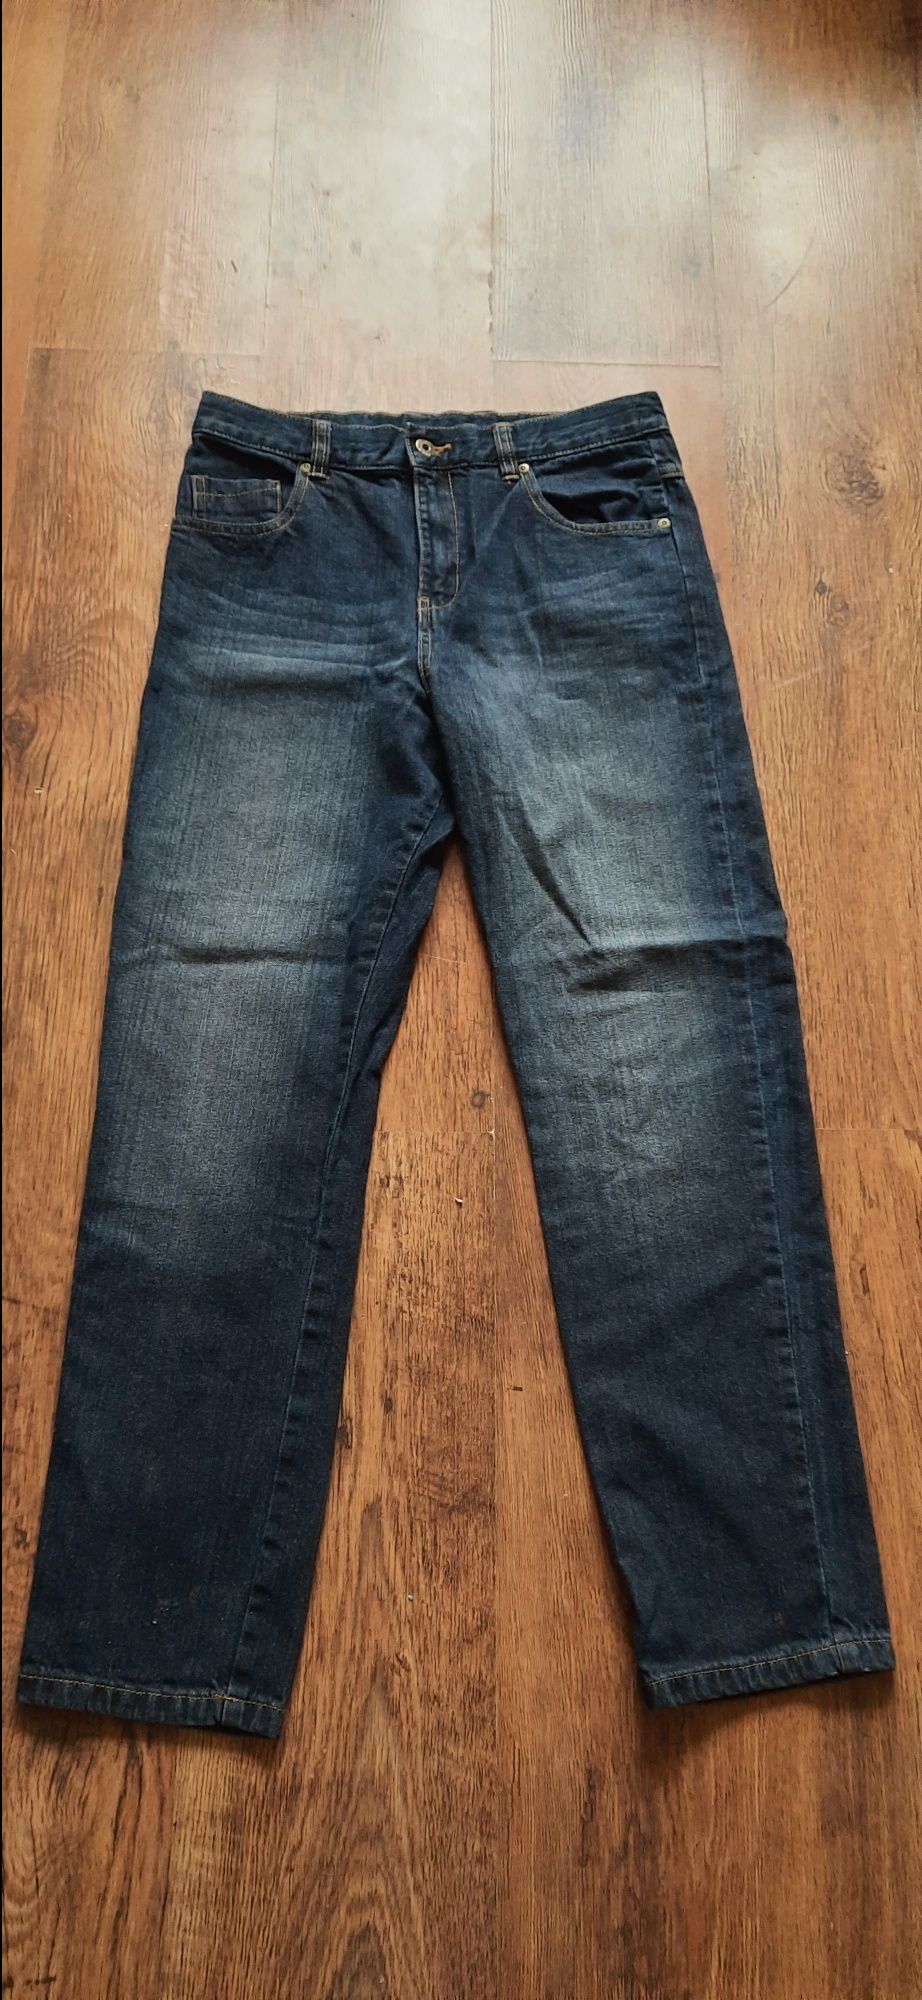 Spodnie jeansowe F&F roz 164/170 galowe